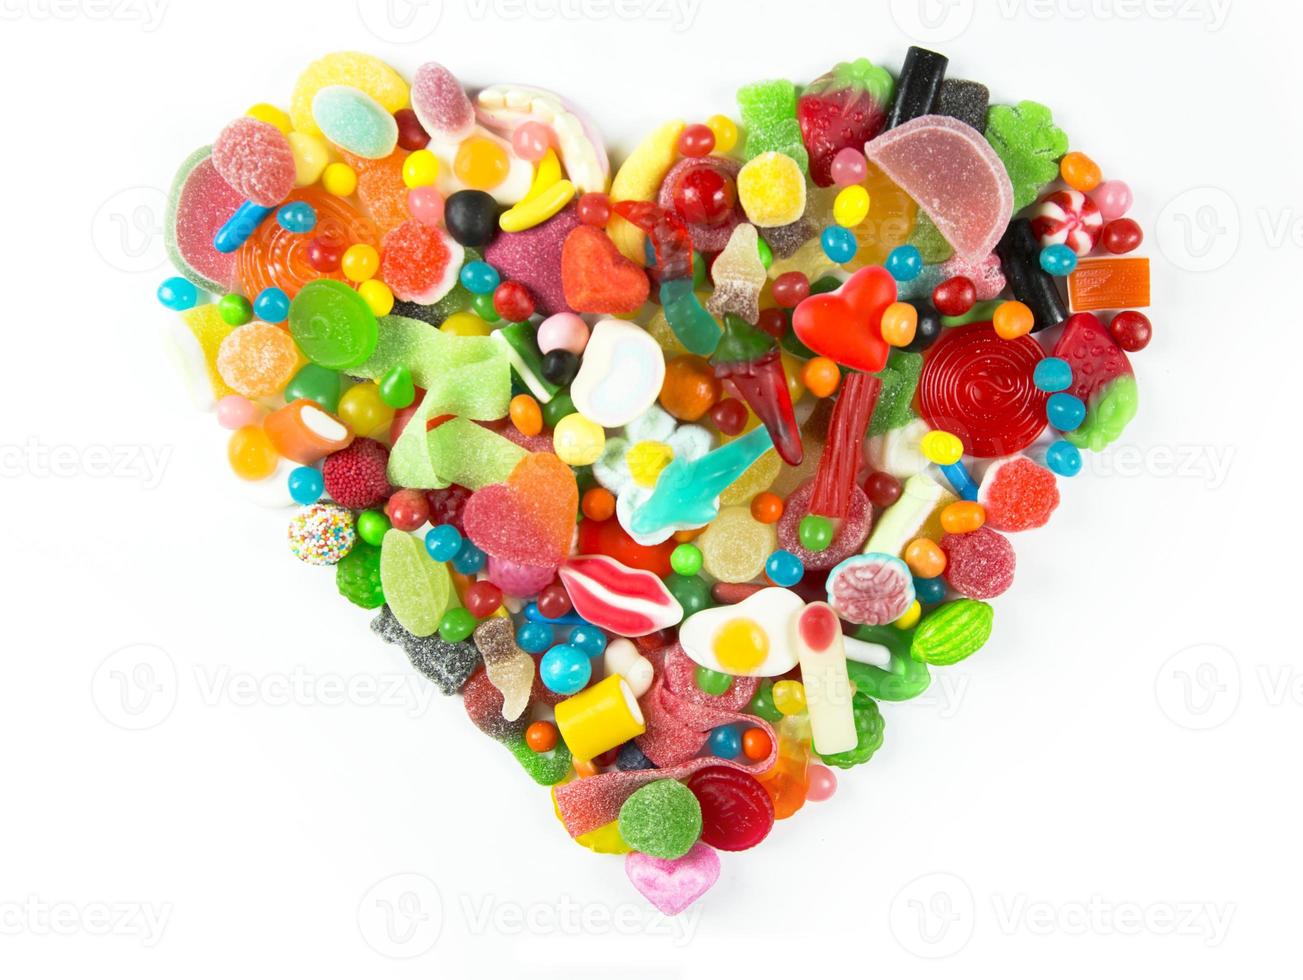 snoepgoed in de vorm van een hart foto